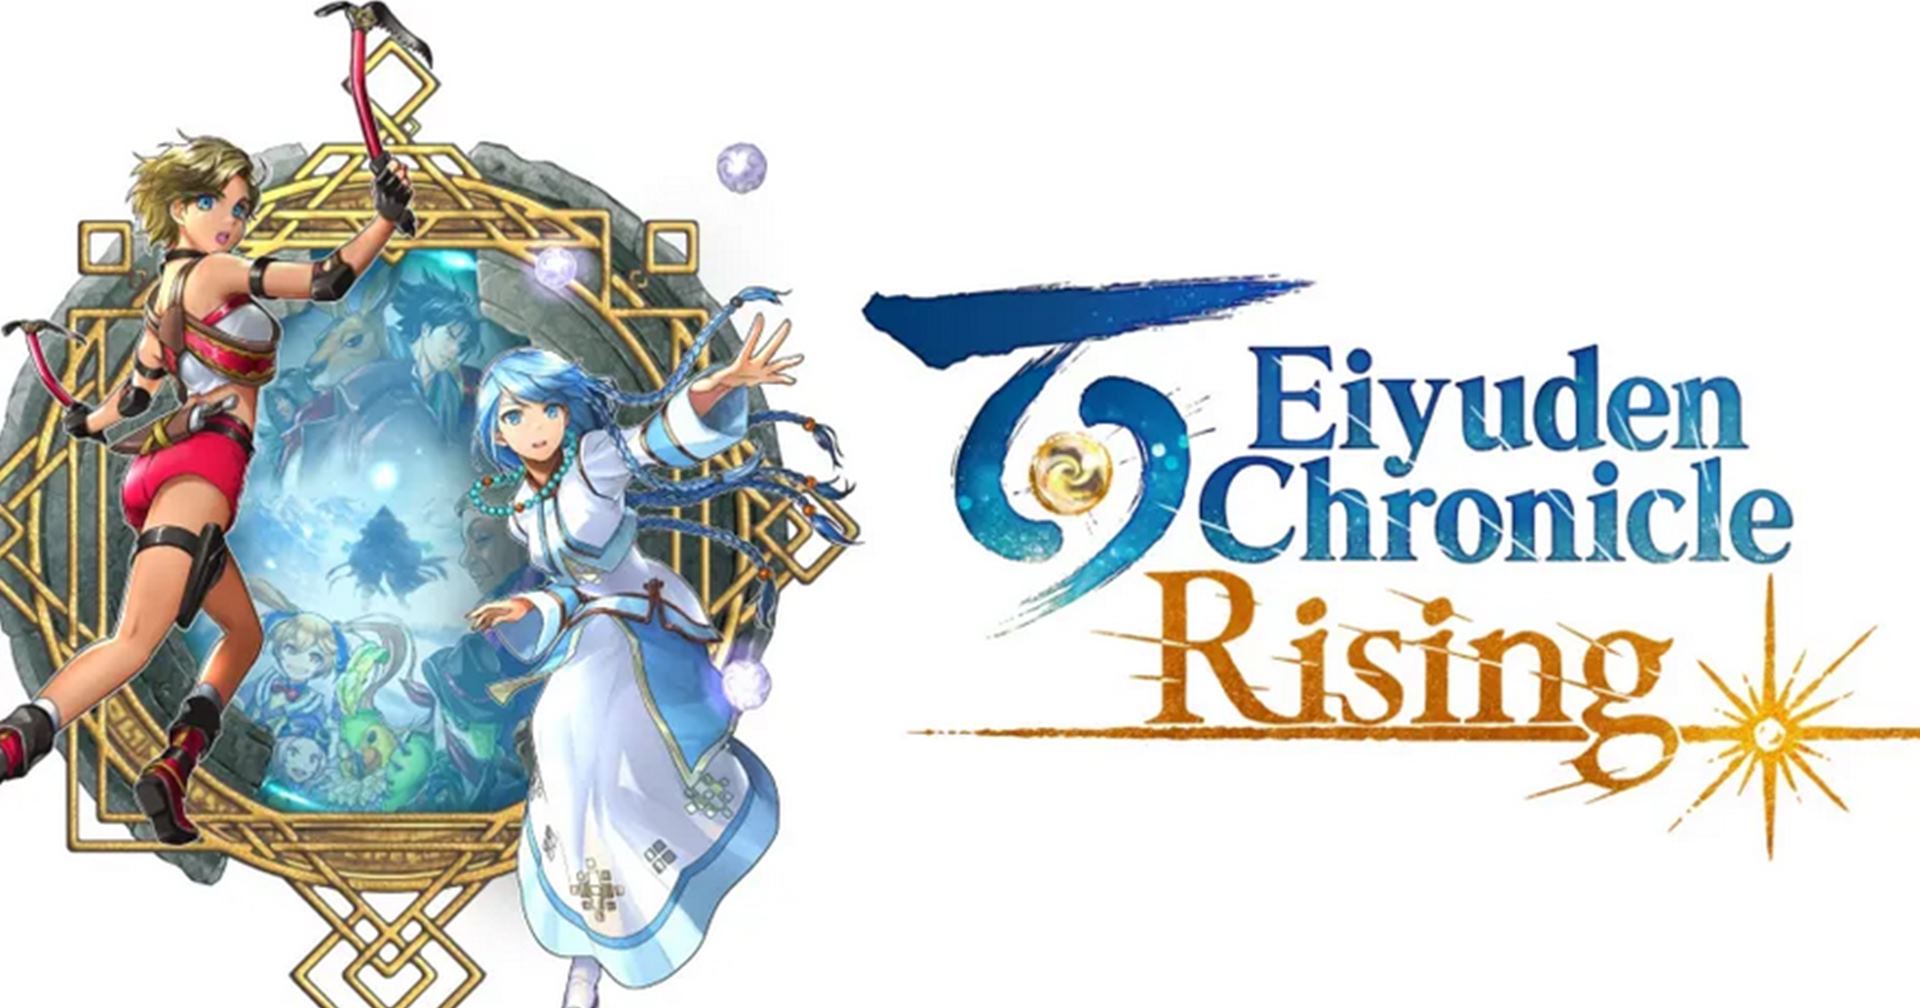 เกม Eiyuden Chronicle: Rising วางขาย 10 พฤษภาคม นี้